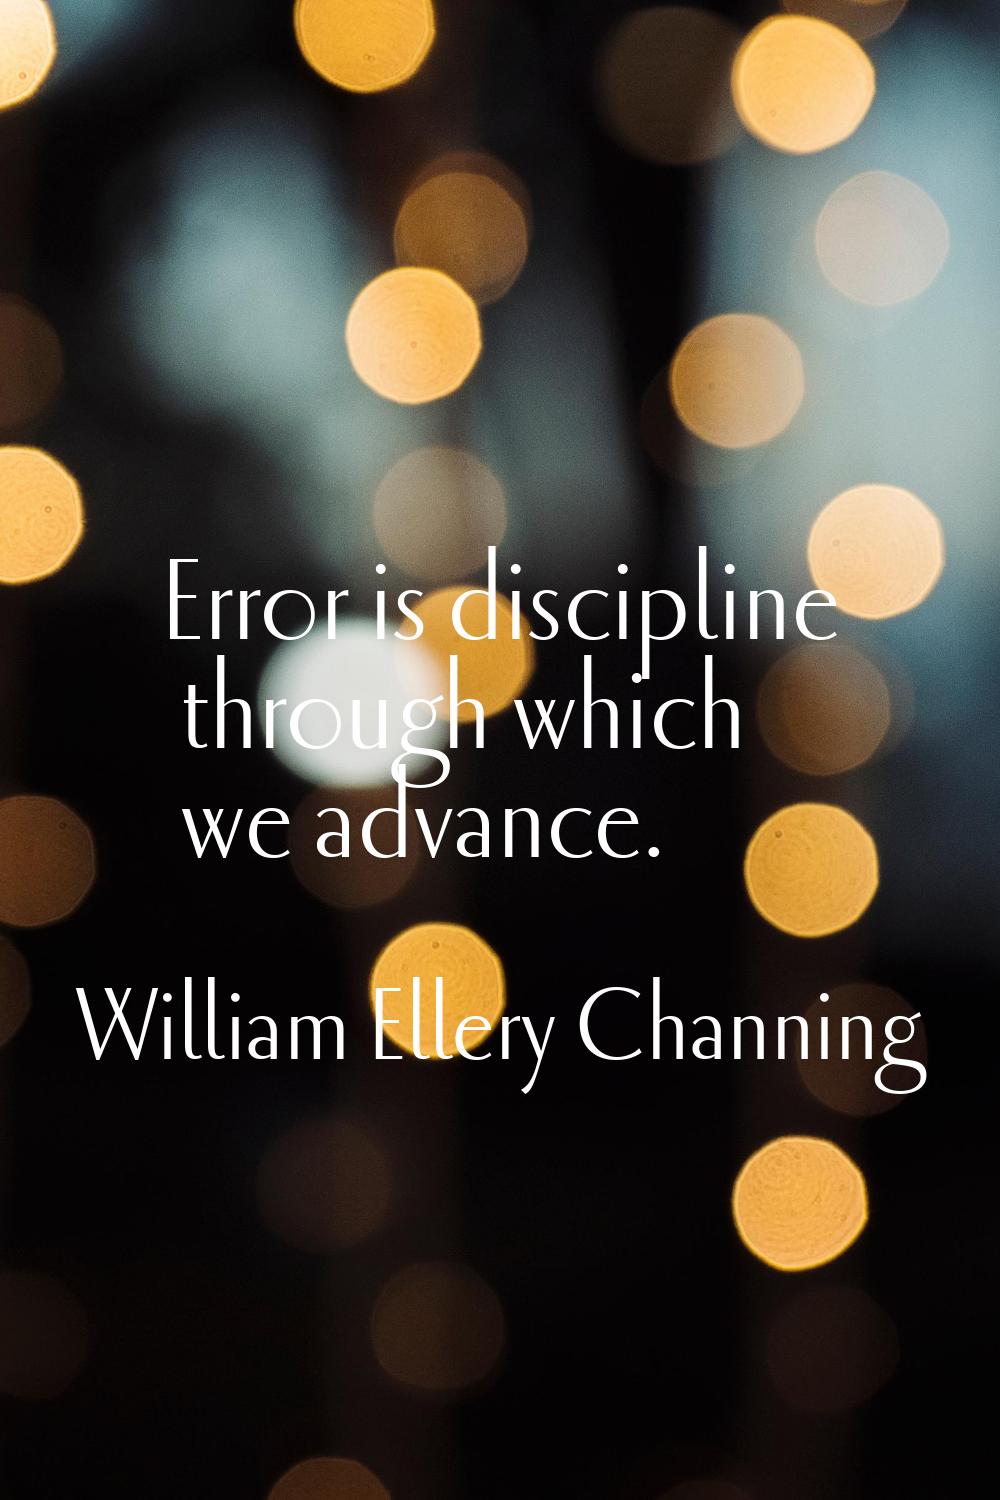 Error is discipline through which we advance.